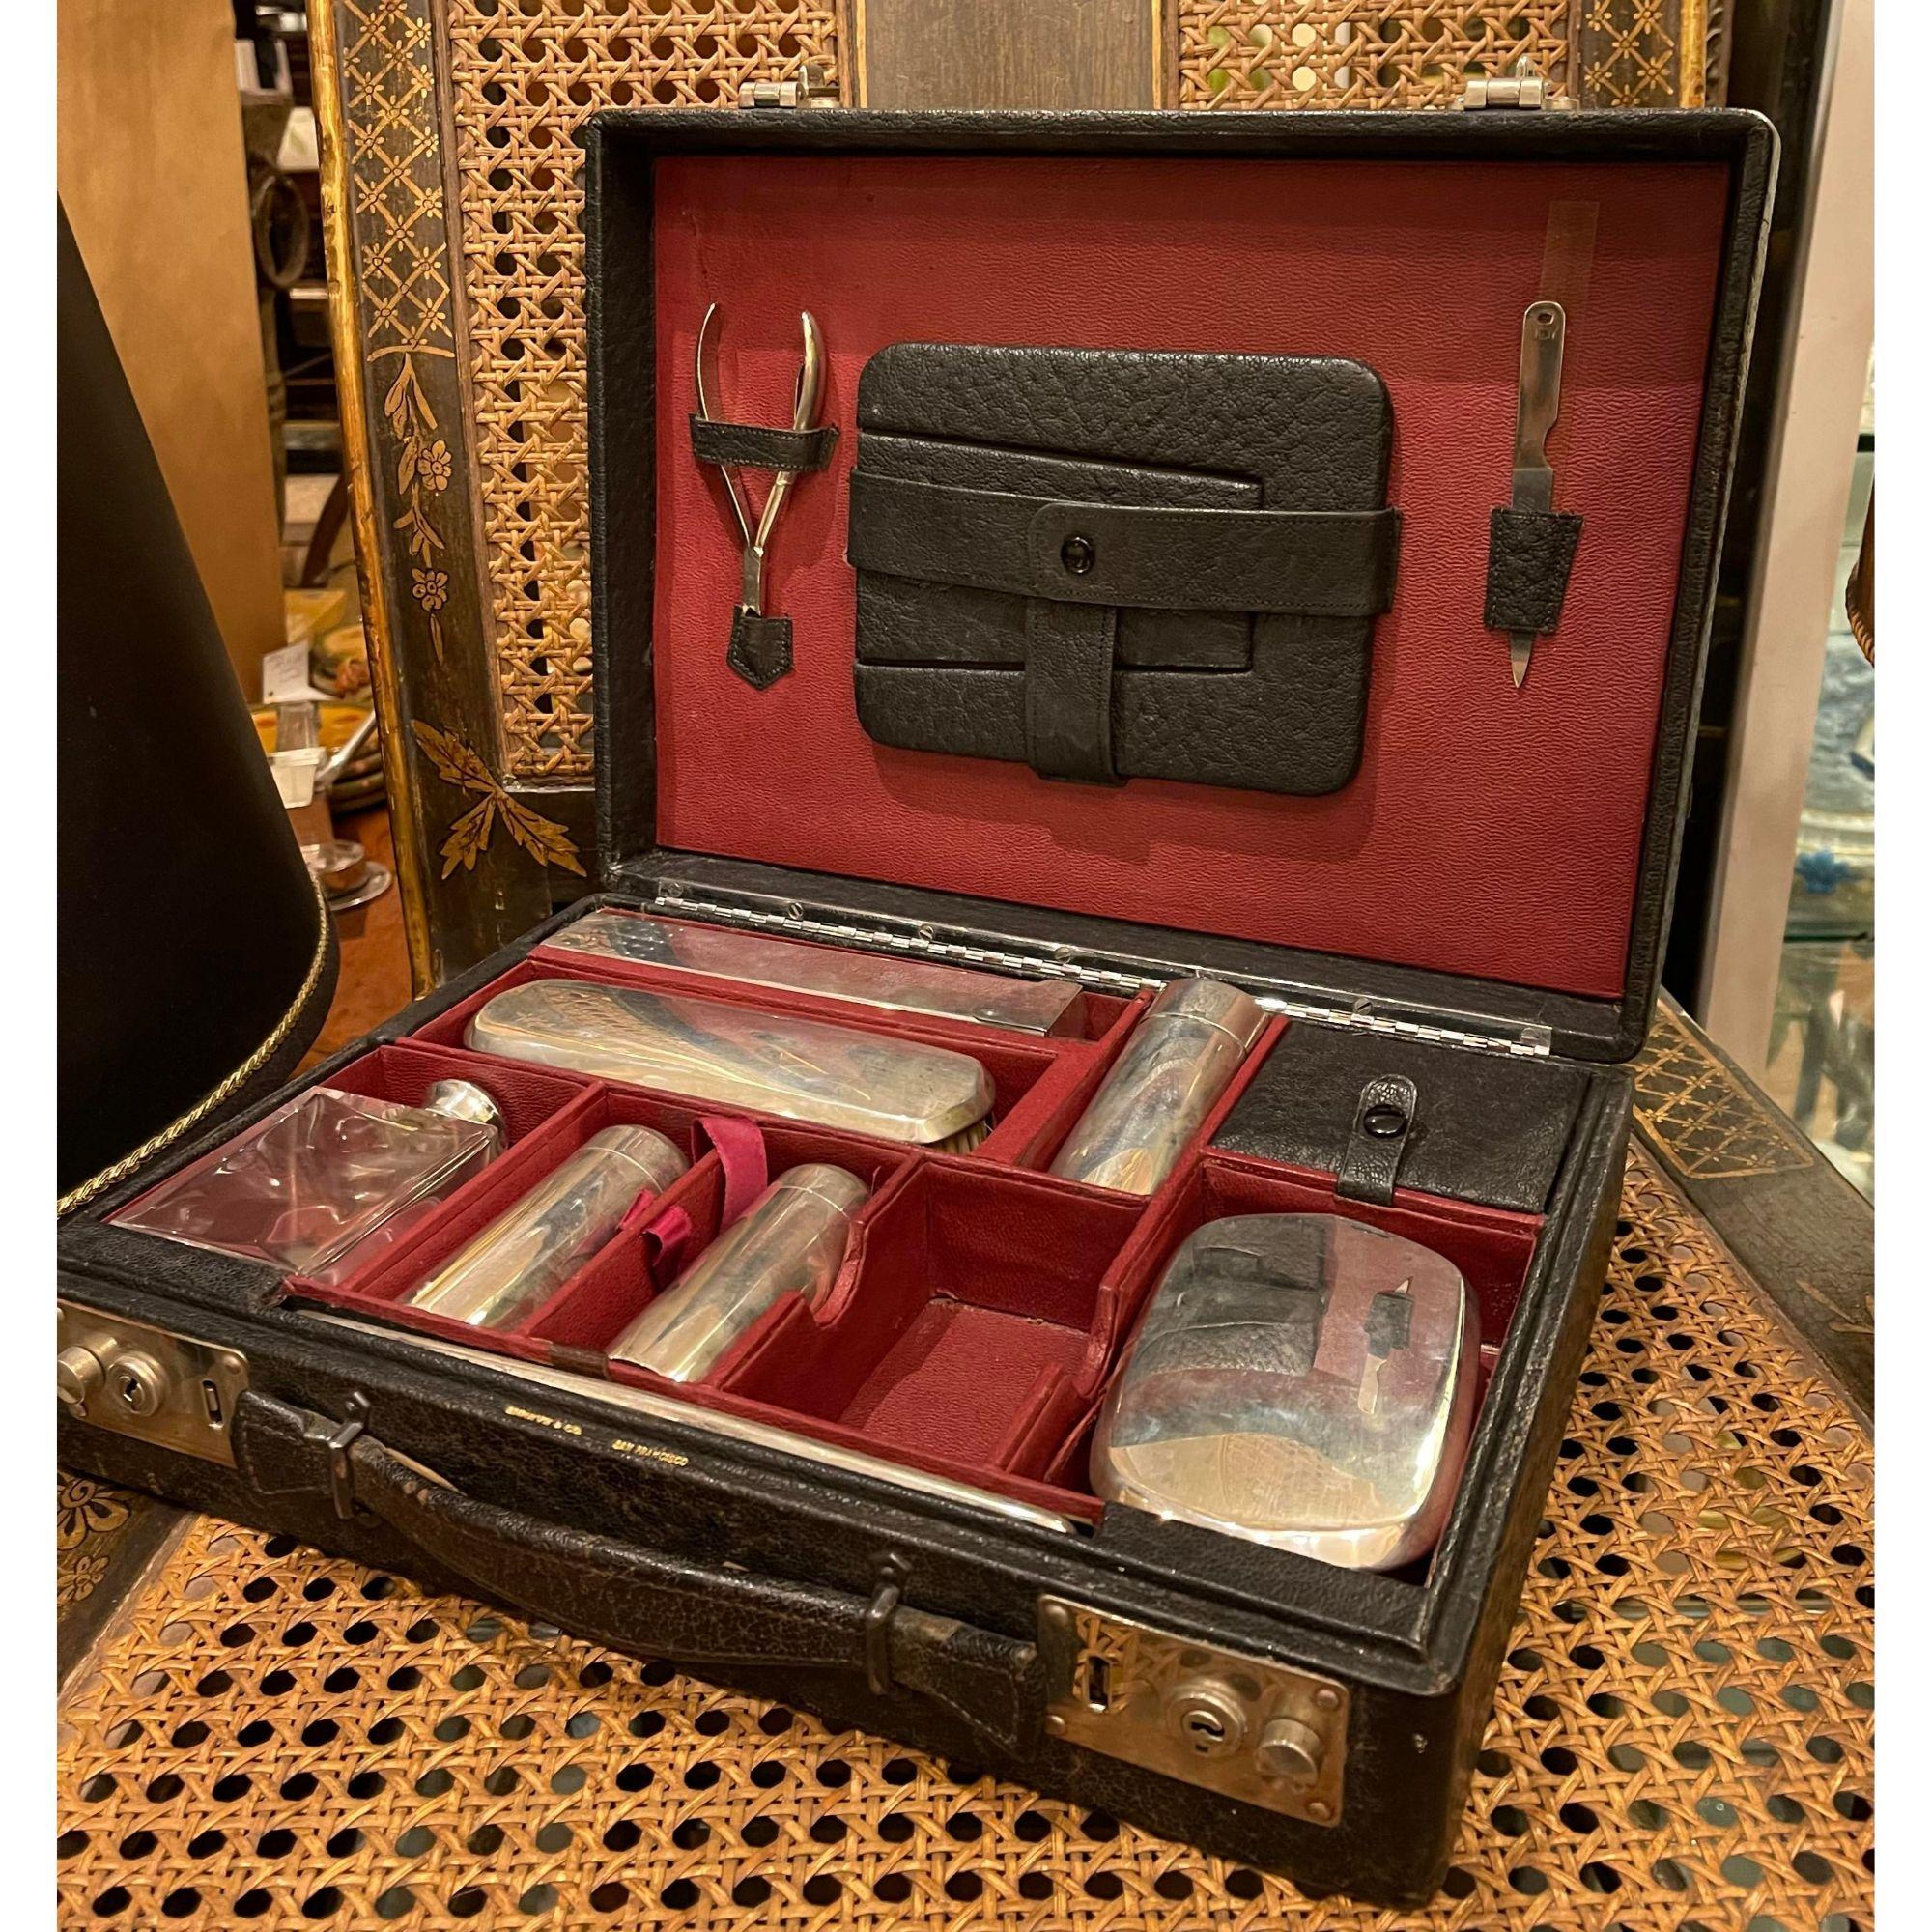 Shreve & Co sterling silver vanity travel dresser set in leather case

Additional information: 
Materials: Crystal, leather, sterling silver
Color: Silver
Brand: Shreve & Co.
Designer: Shreve & Co.
Period: 1930s
Styles: Art Deco
Item type: